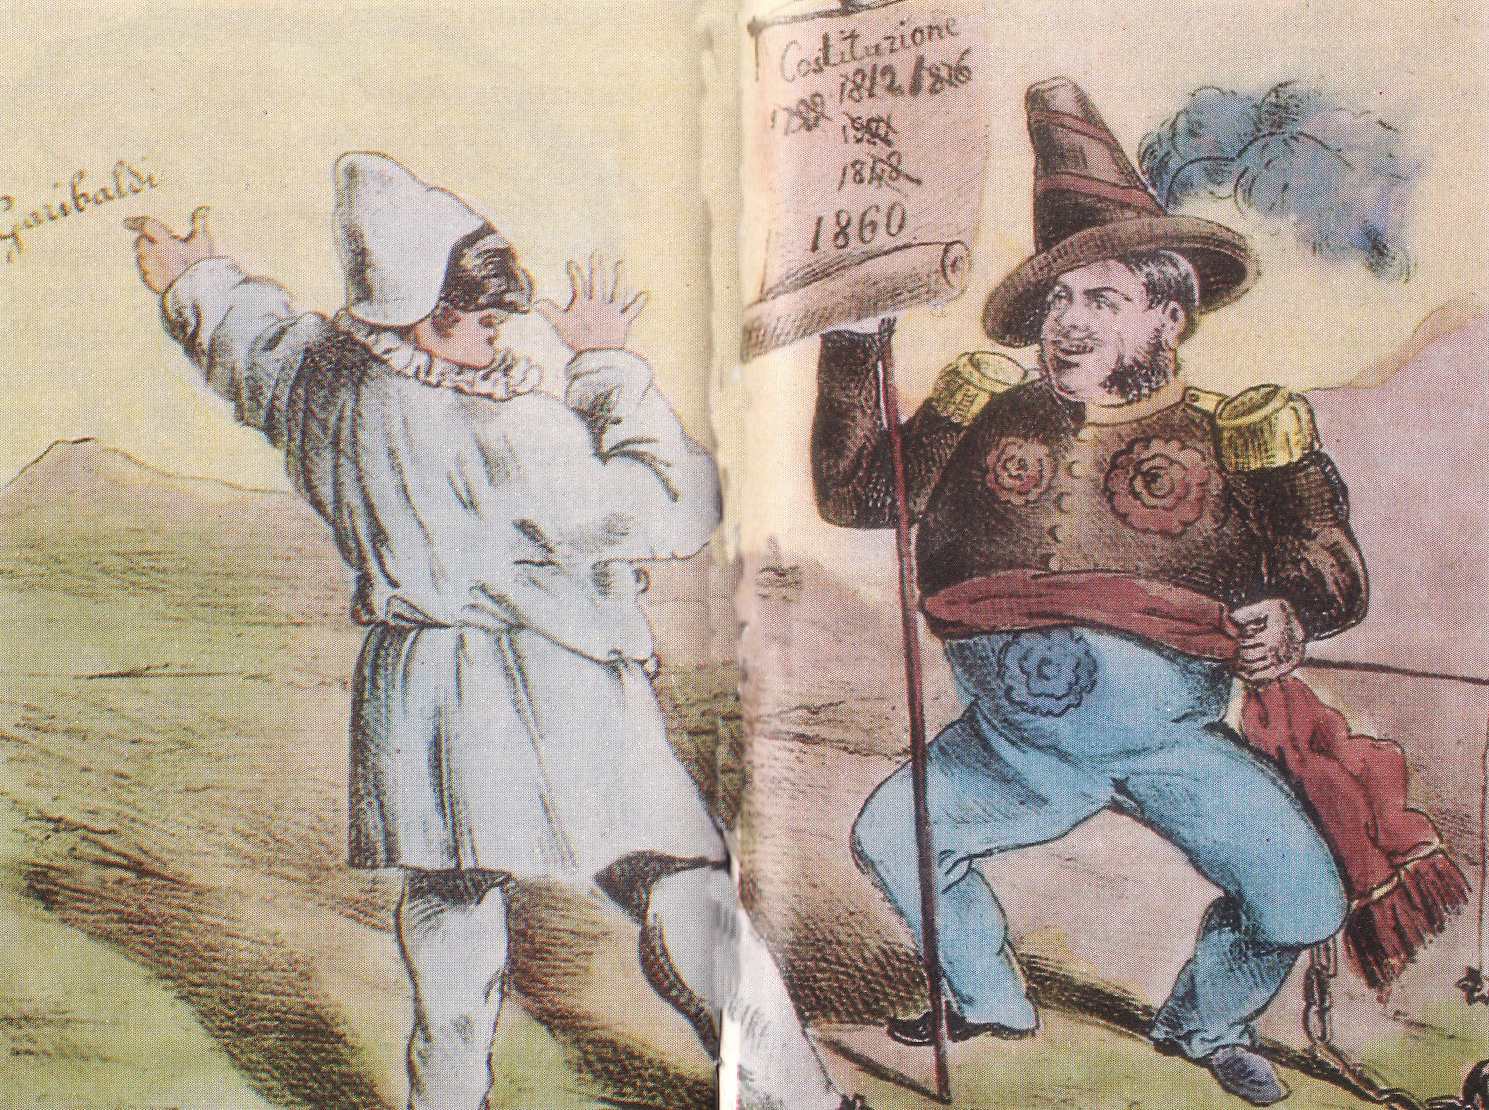 Una vignetta in cui Pulcinella prende in giro il Borbone, dato che sta arrivando Garibaldi  L'entusiasmo per l'Unit svan presto dinanzi ai tanti problemi del Meridione  1860 ca 